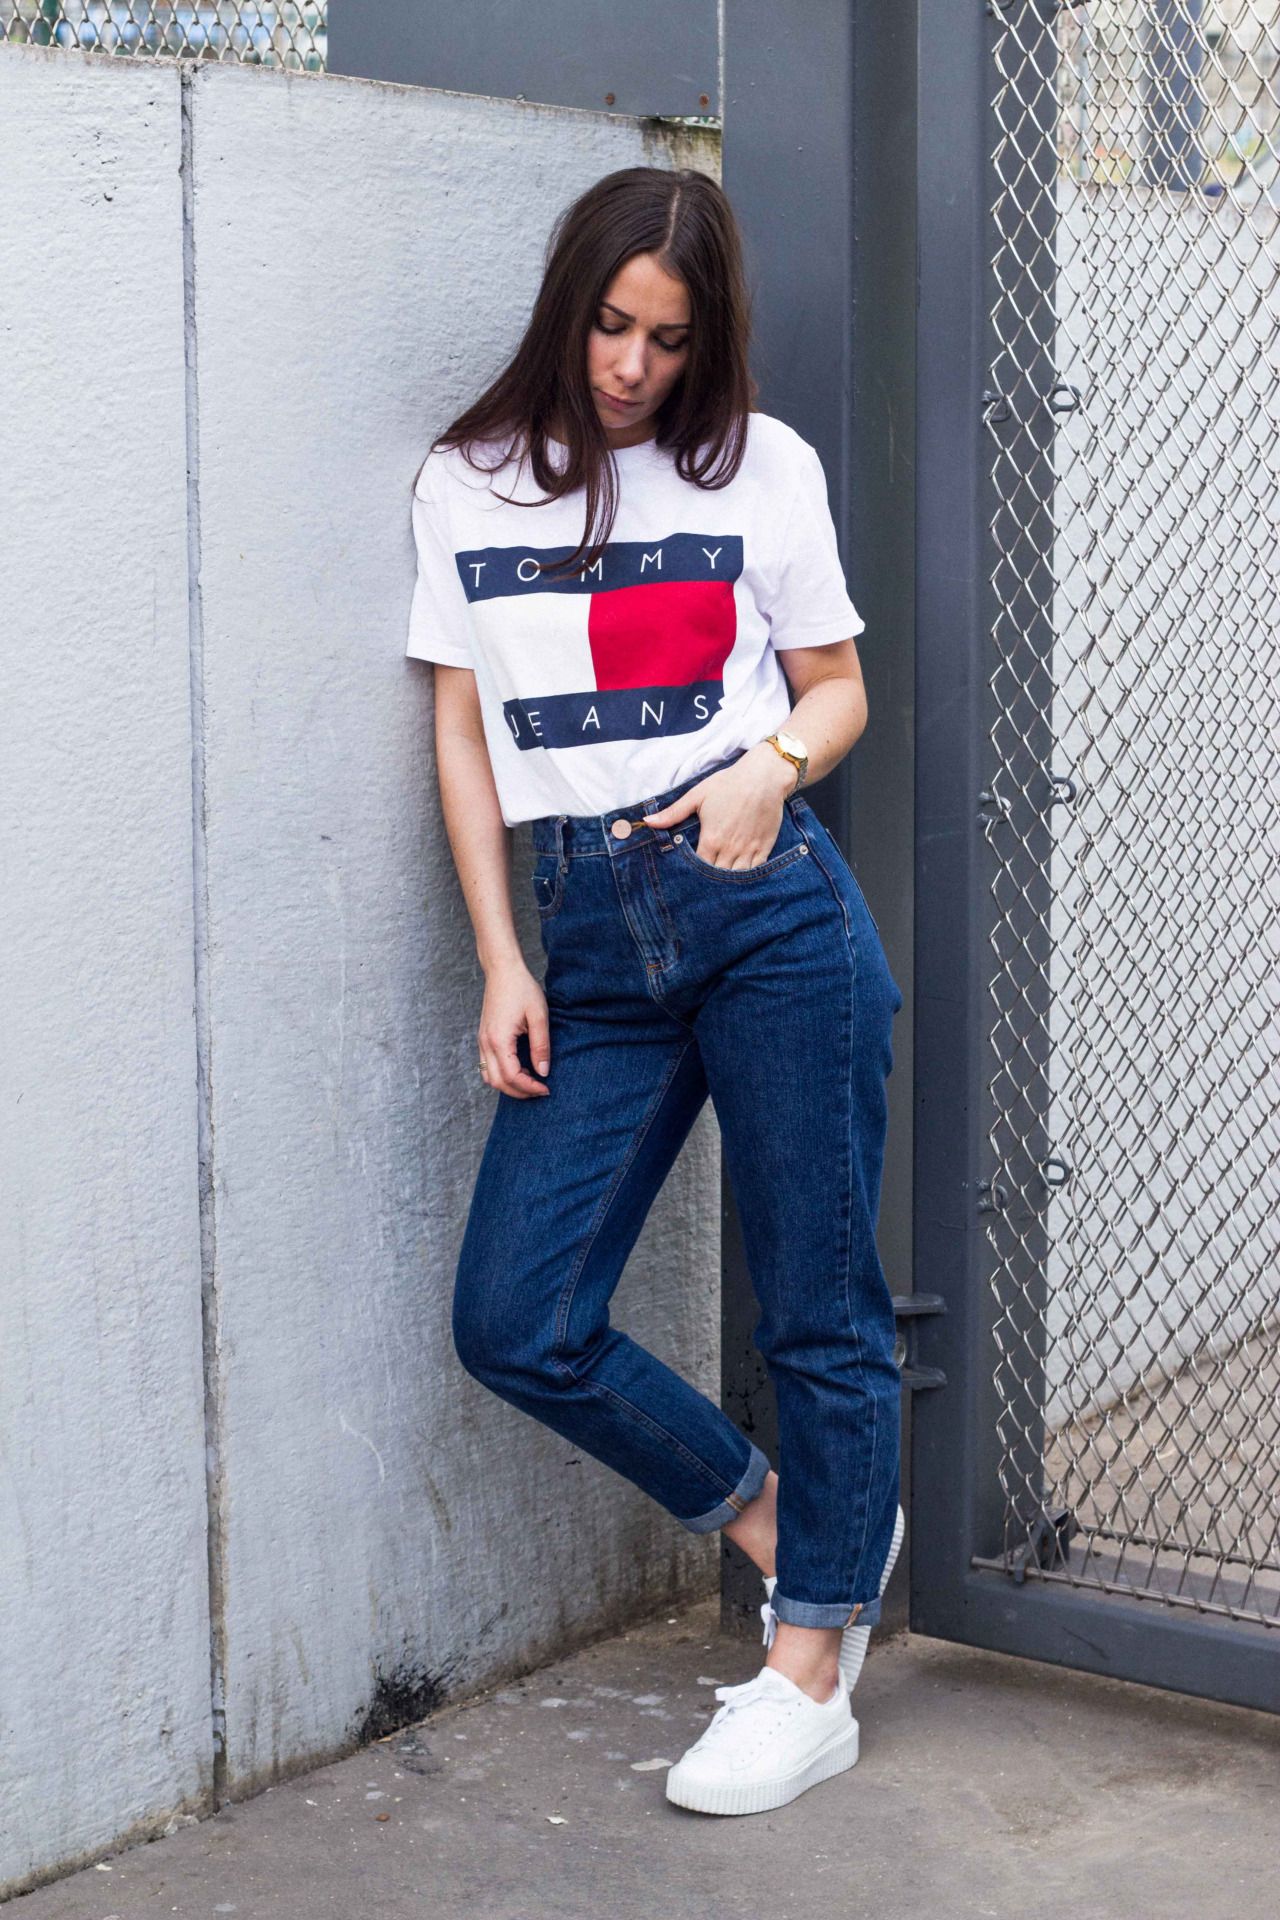 Девочка с джинсами и футболкой